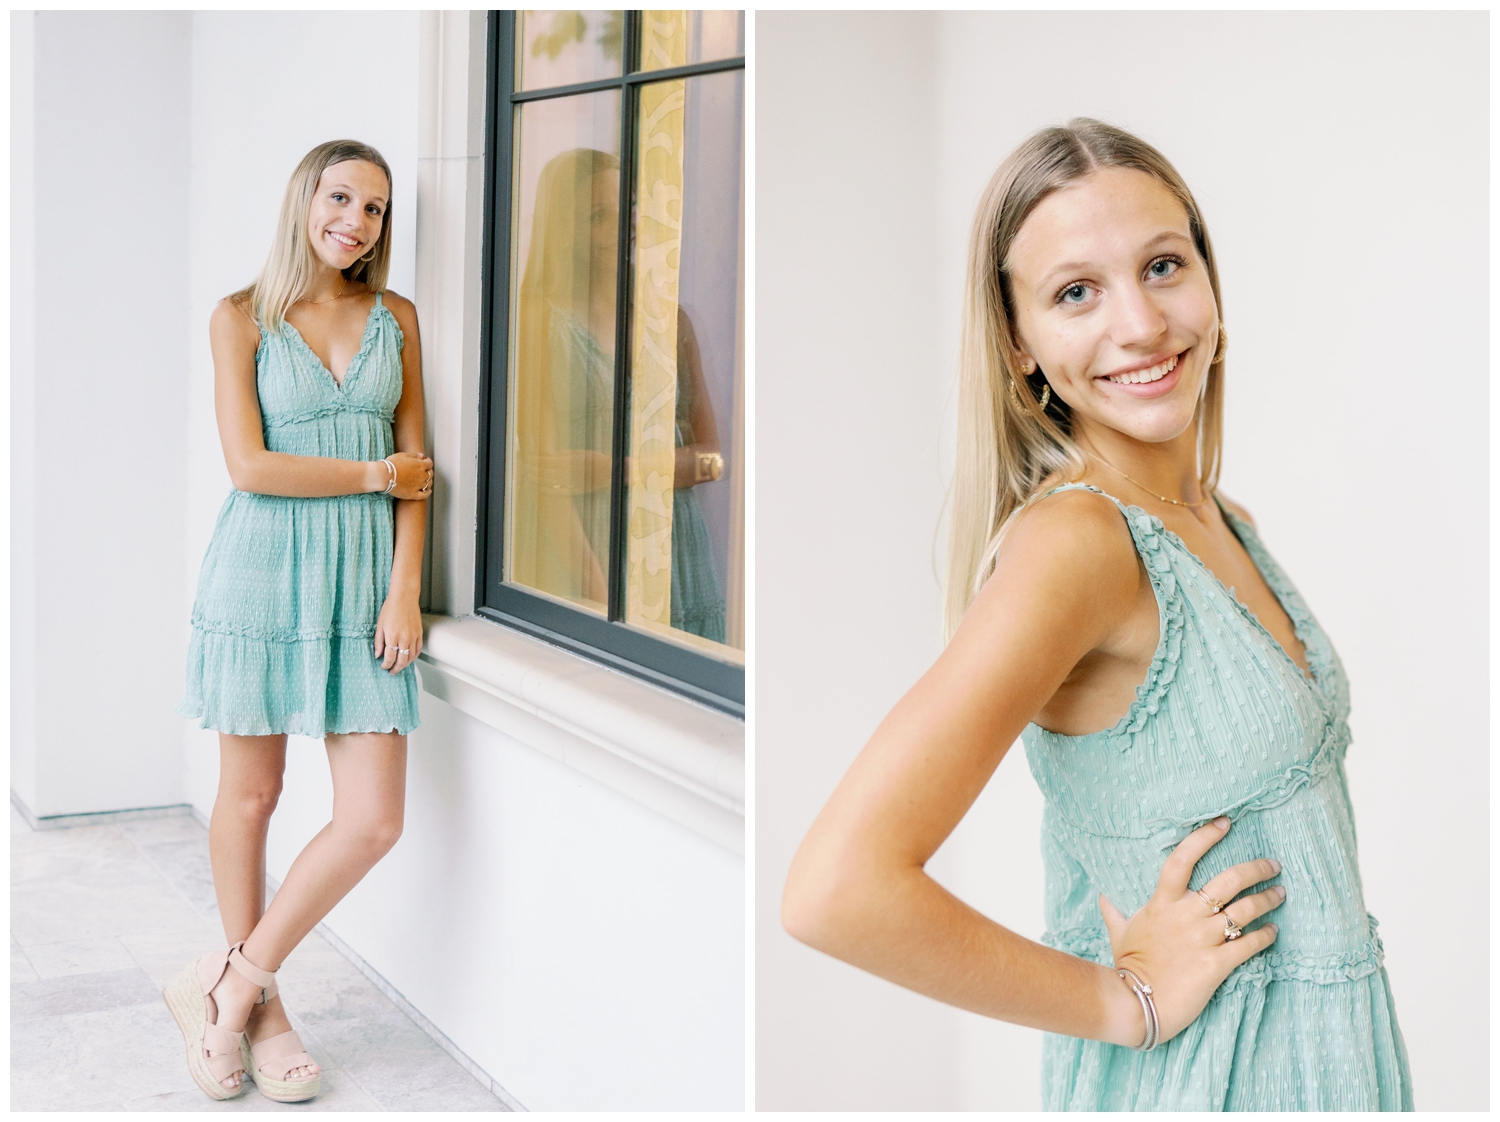 Senior Spokesmodel Team Houston senior girl standing against white wall in green sundress